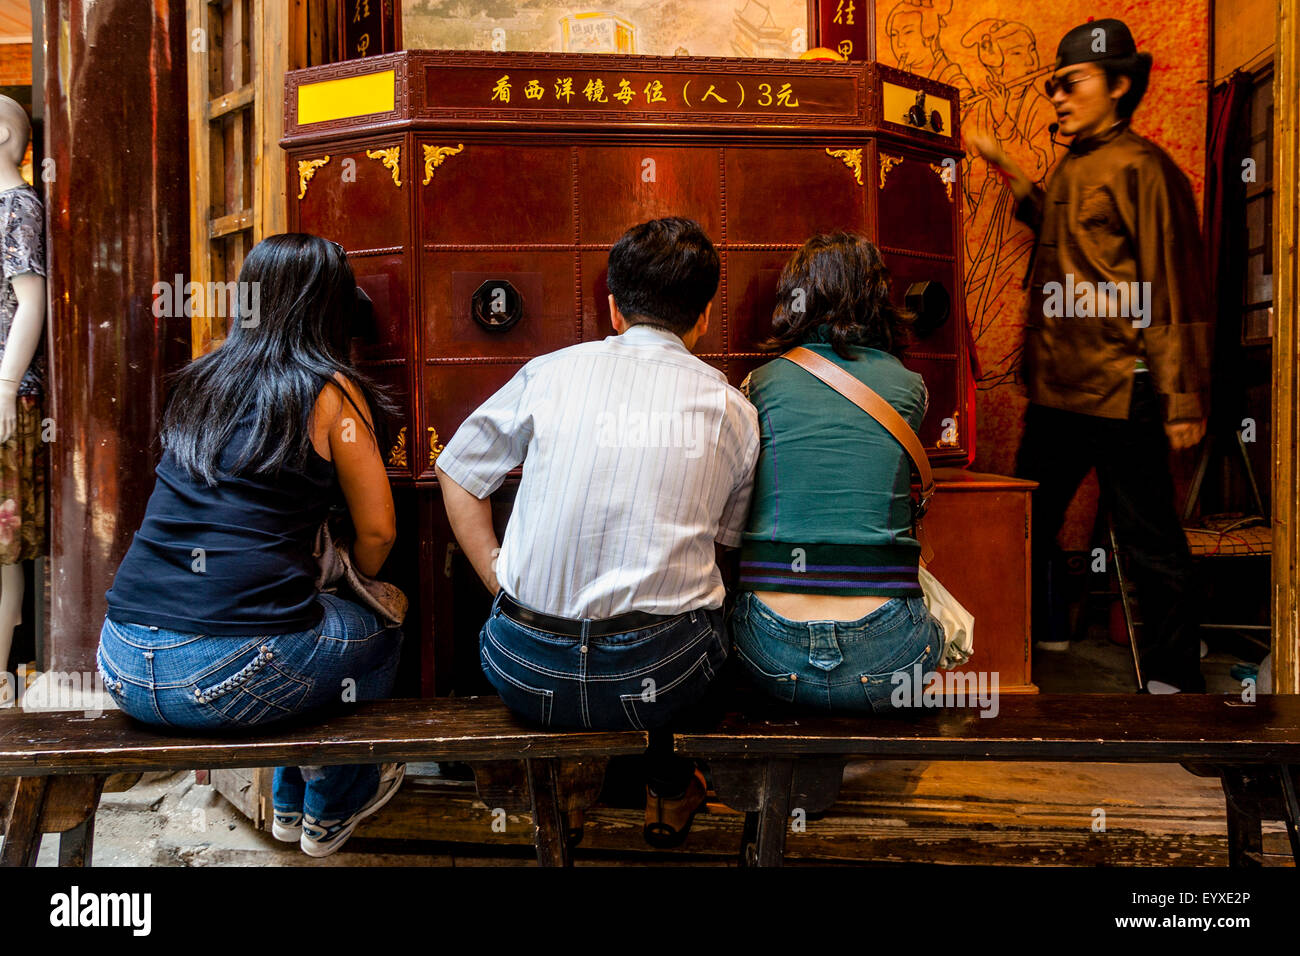 Les gens regardent un peep-show traditionnel chinois, le vieux Shanghai, Shanghai, Chine Banque D'Images